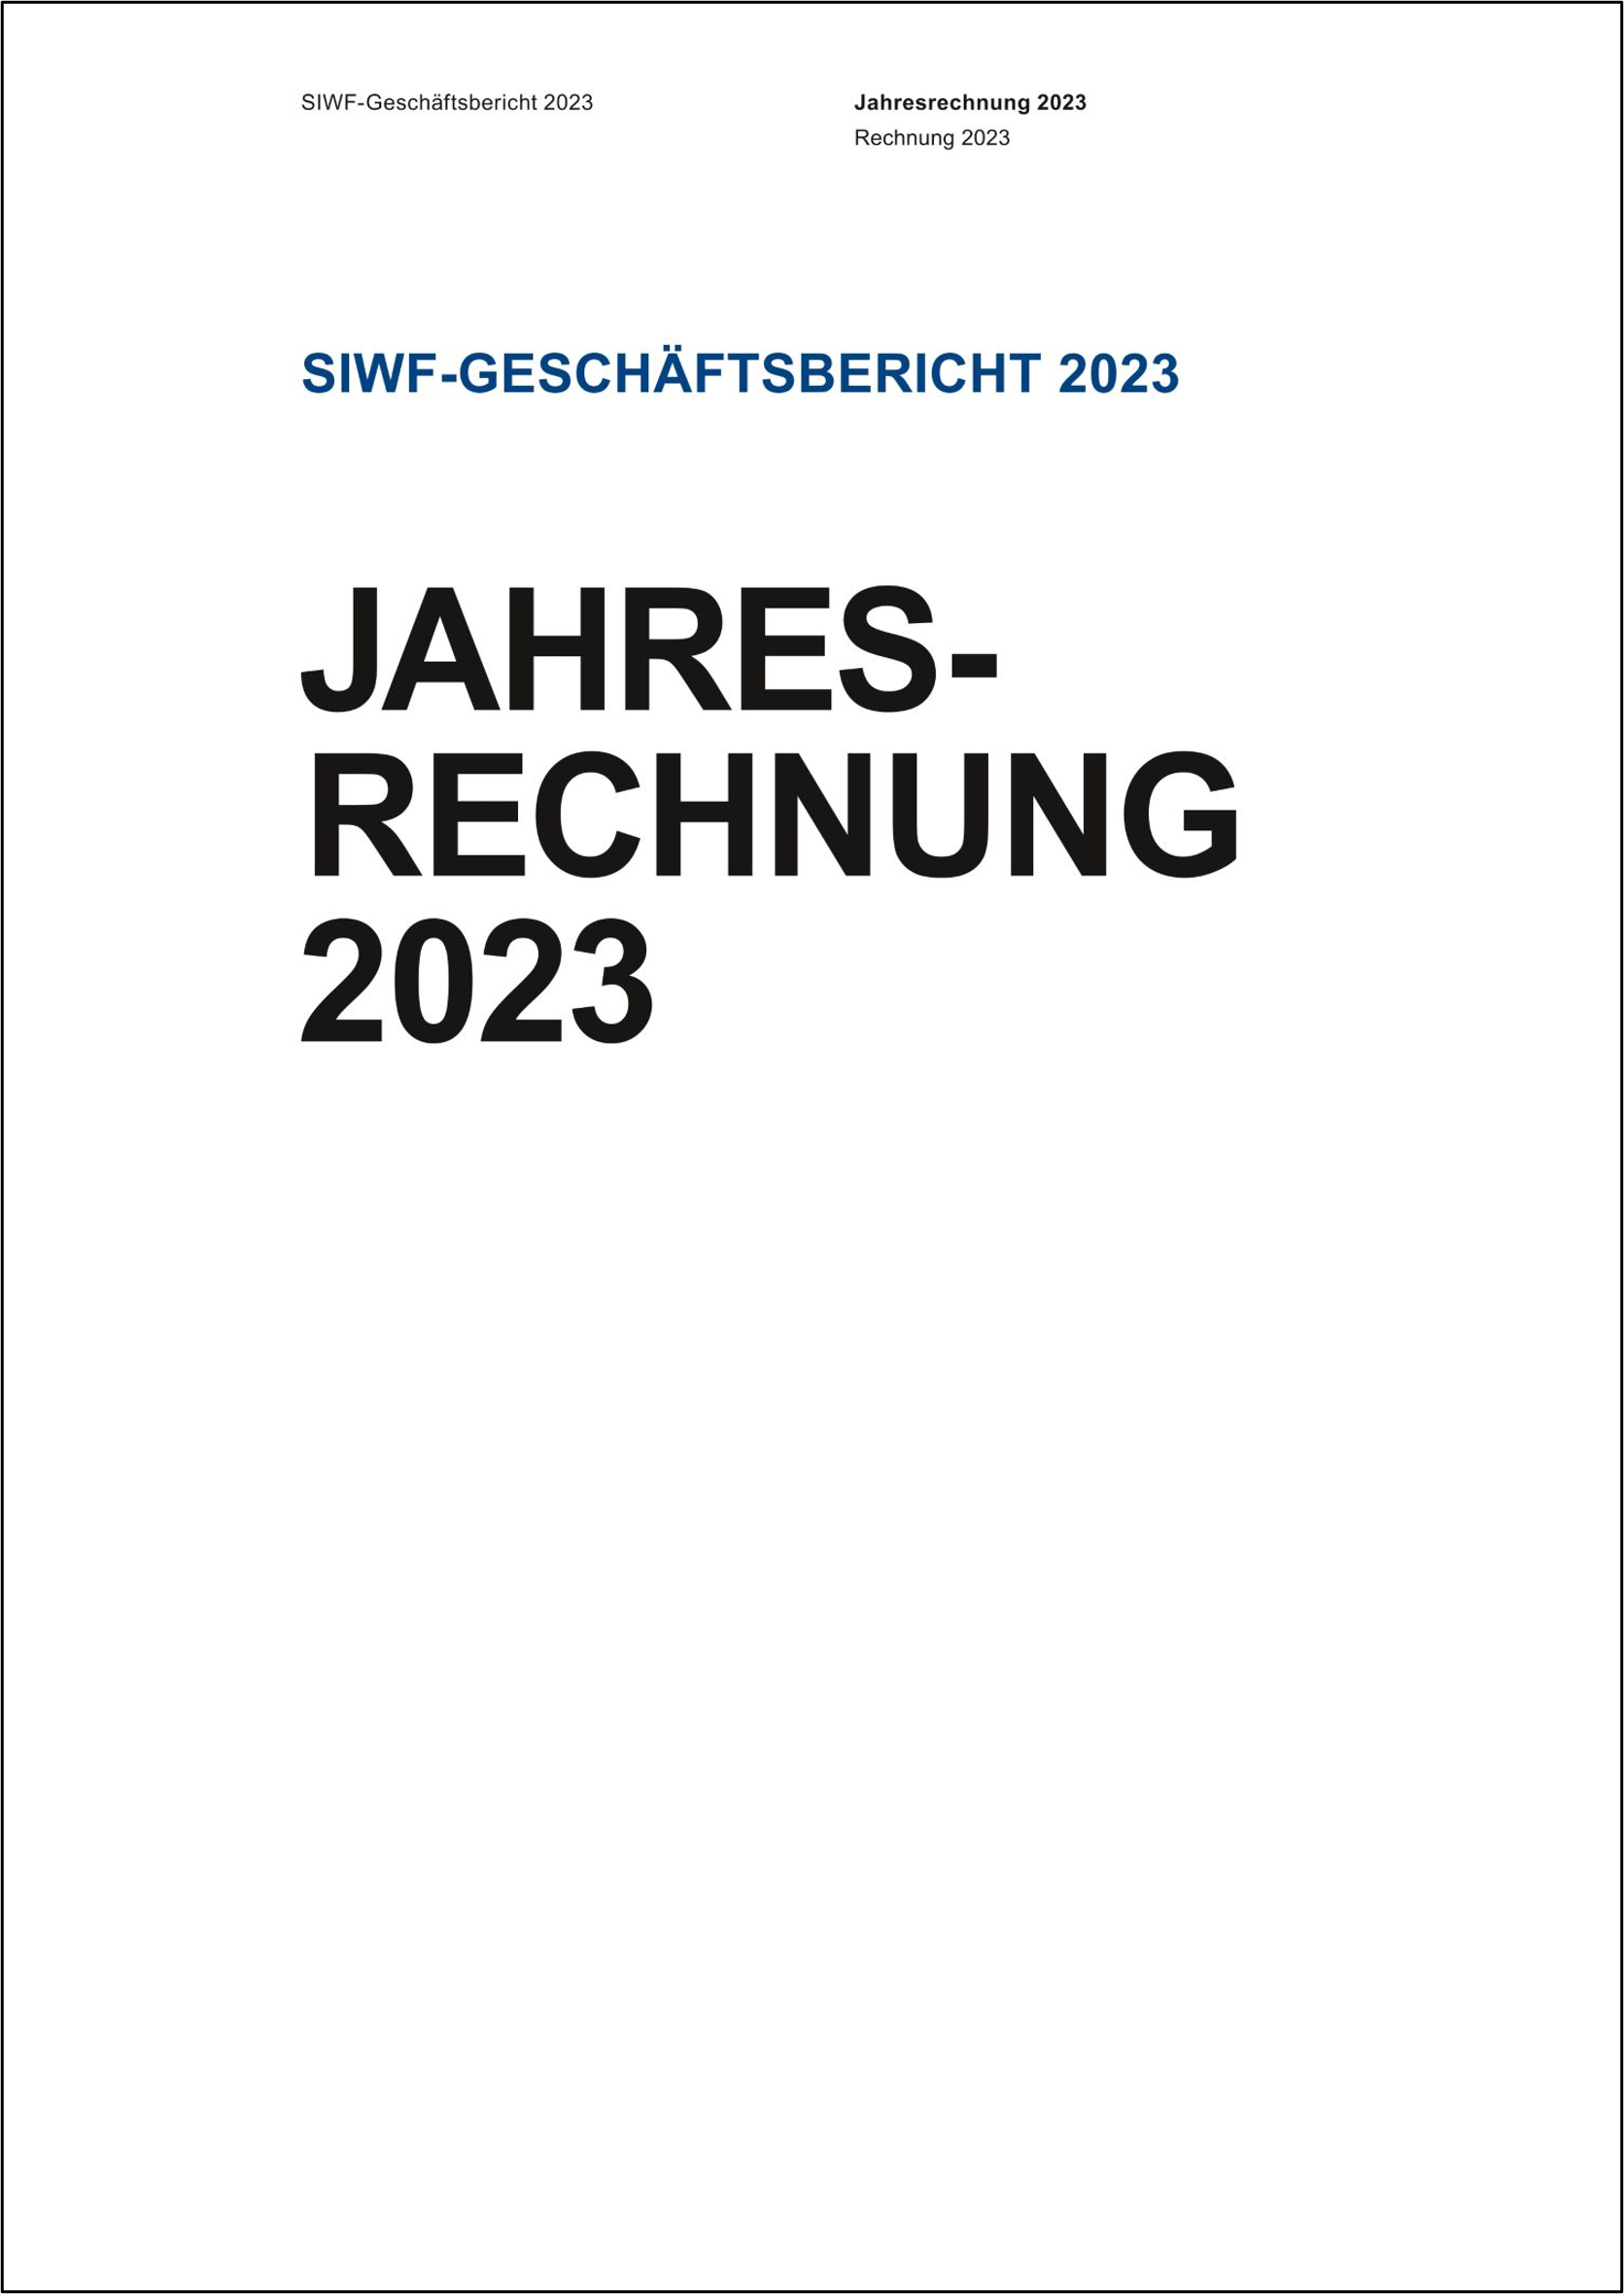 Jahresrechnung SIWF 2023